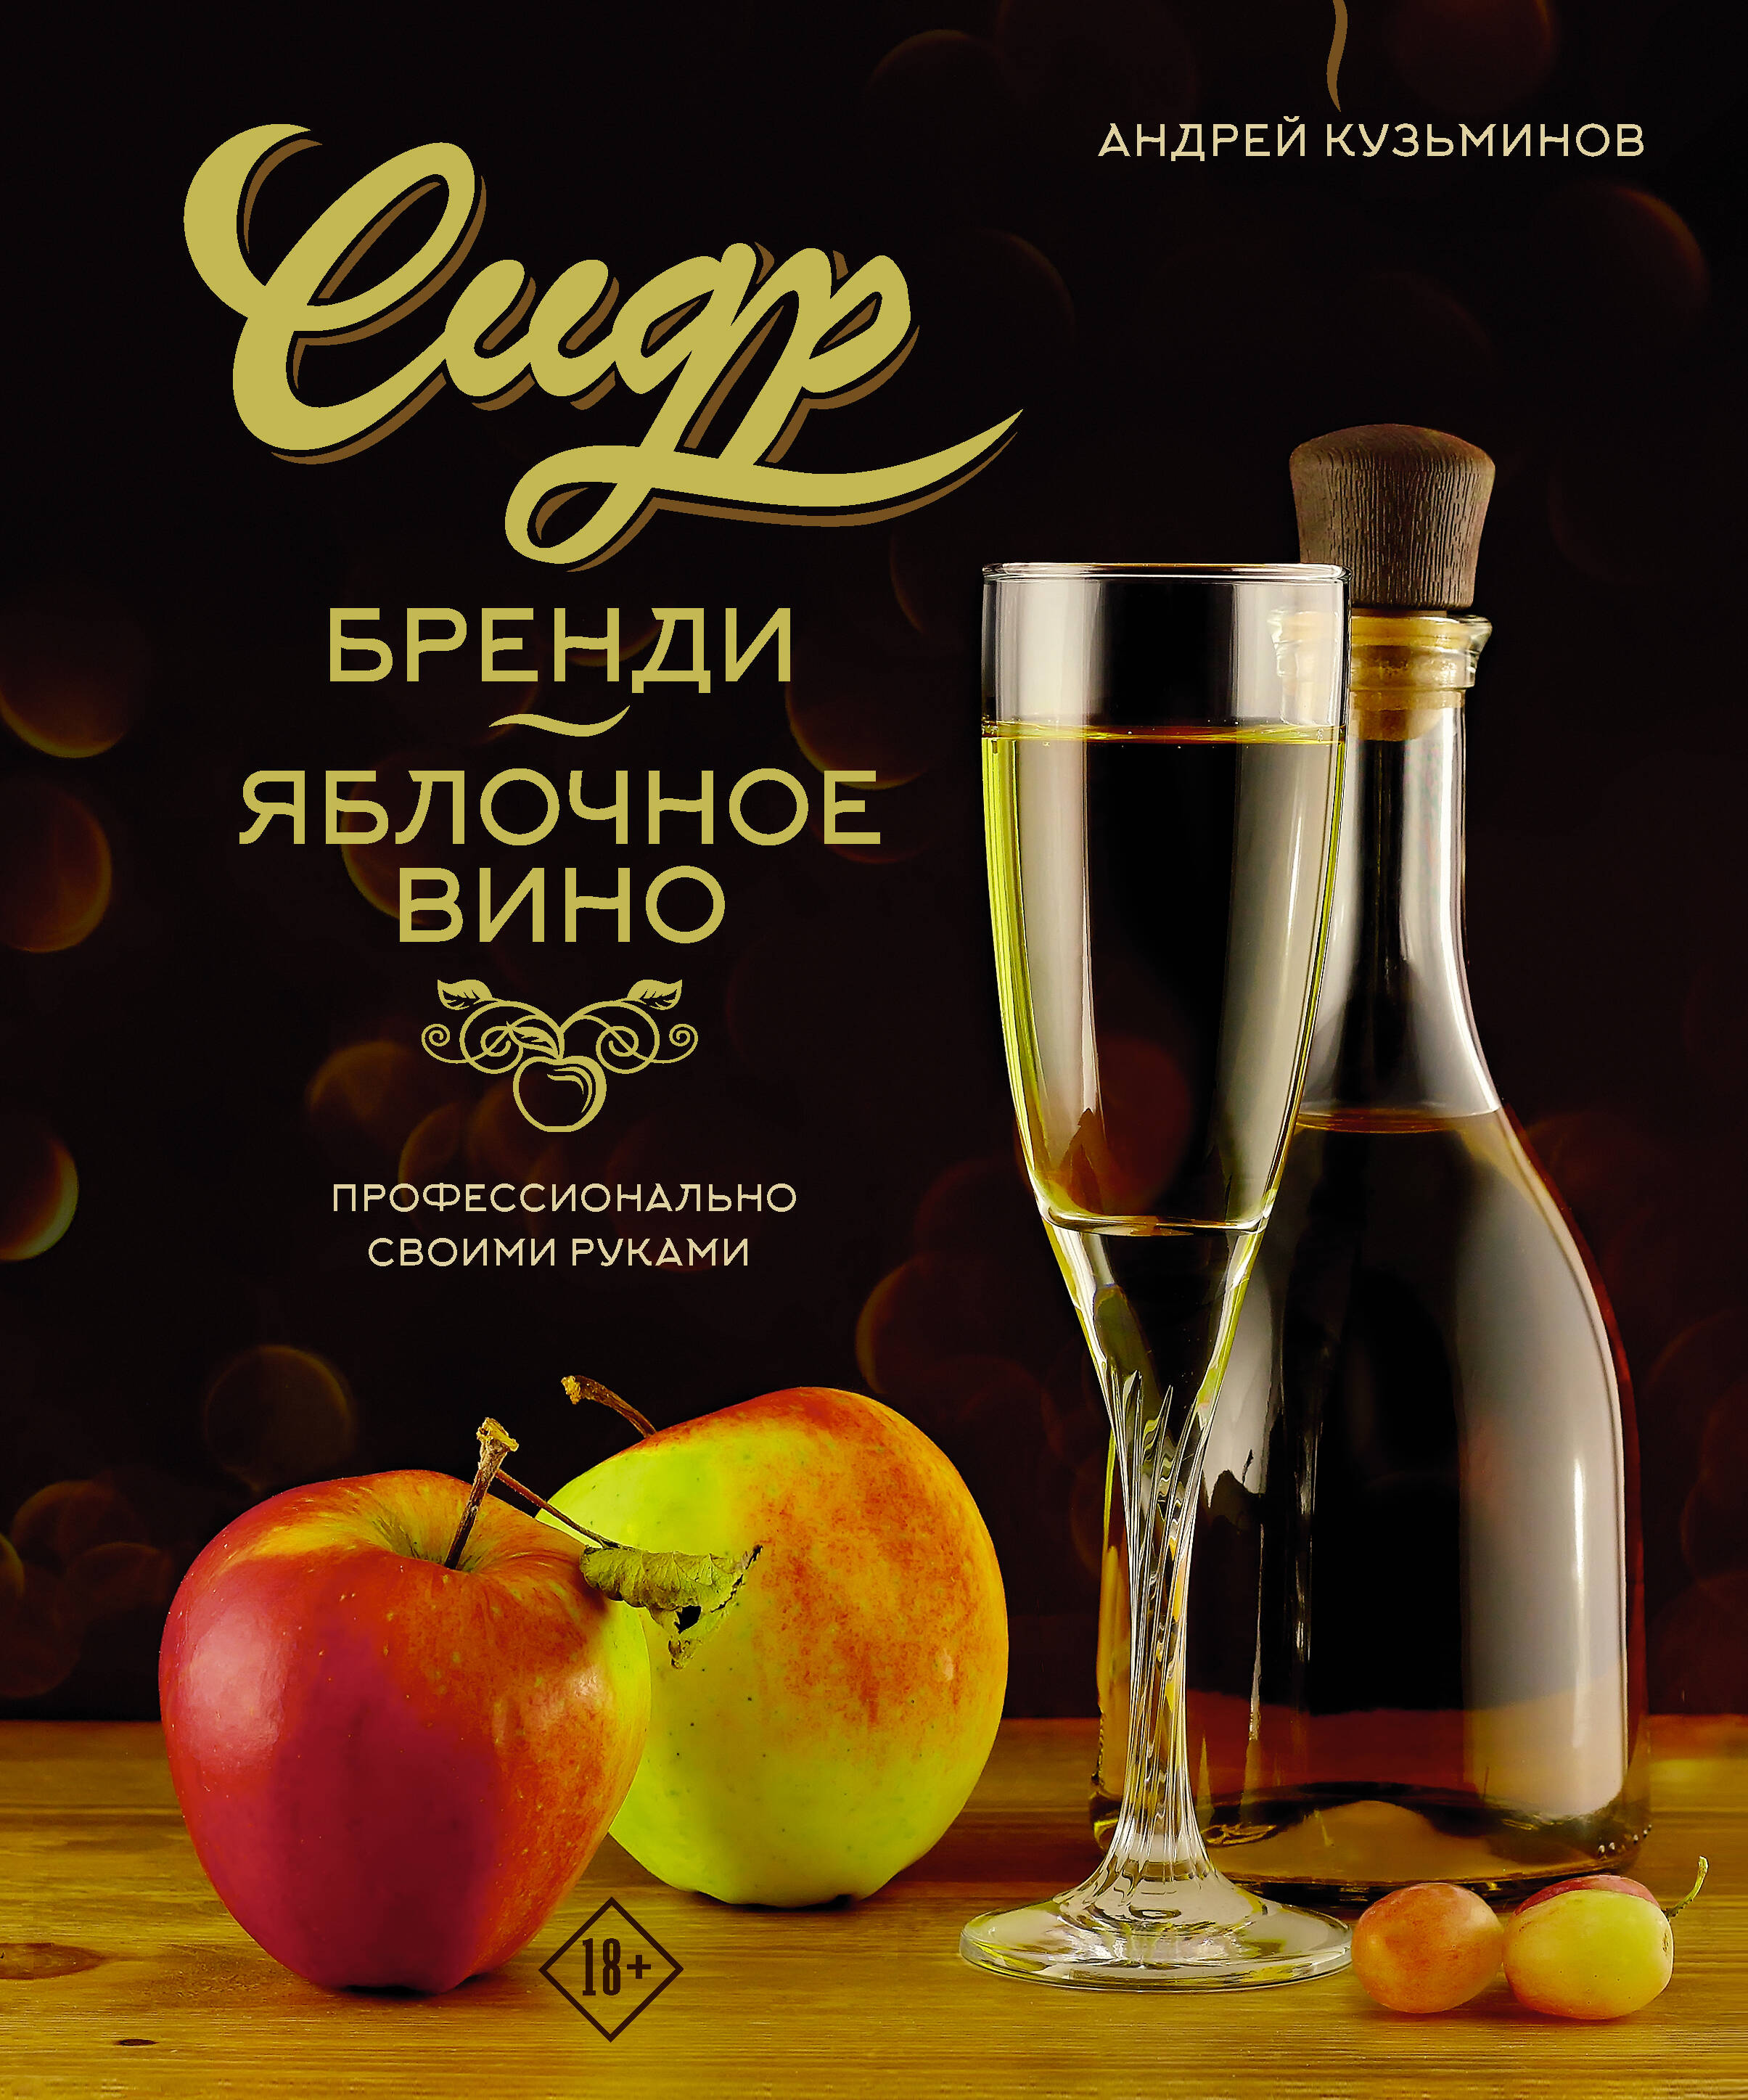 Кузьминов Андрей Игоревич Сидр, бренди, яблочное вино. Профессионально. Своими руками